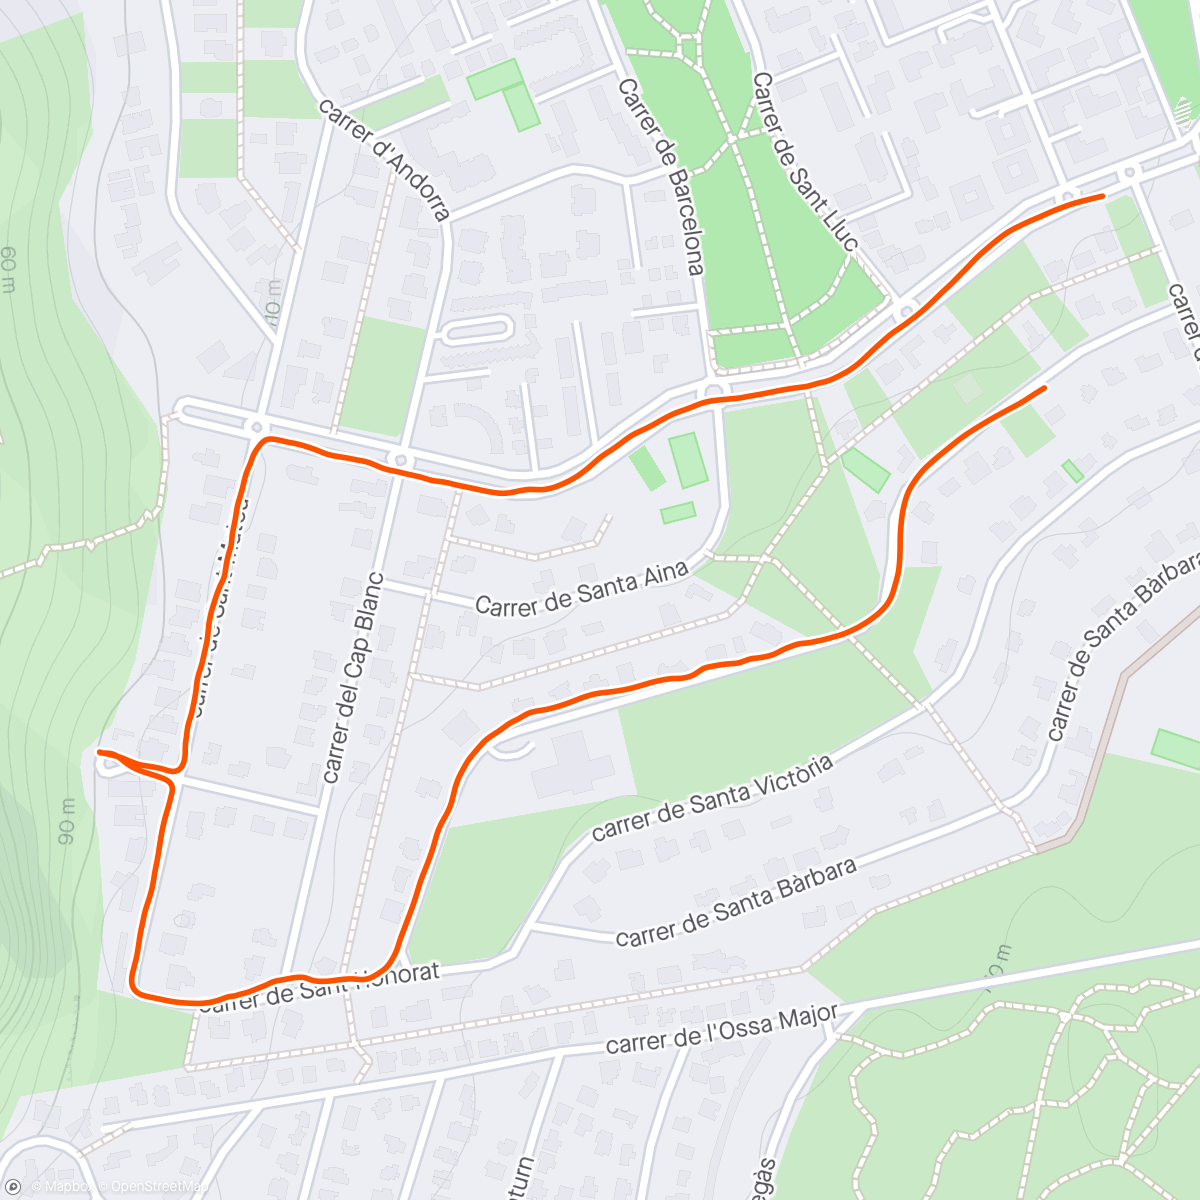 Mappa dell'attività Caminata de noche